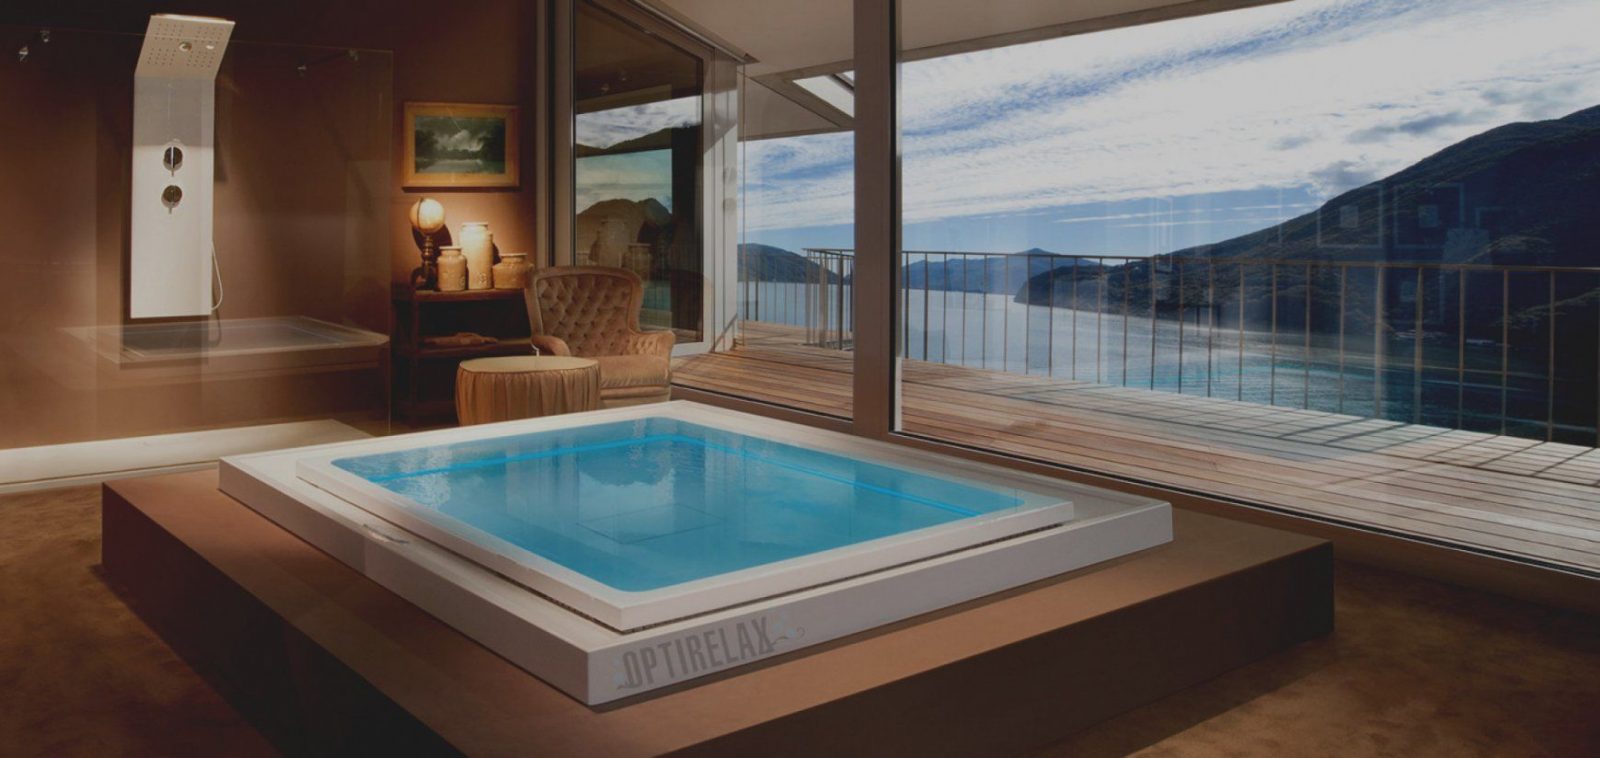 Wunderbare Luxus Badezimmer Mit Whirlpool Modern Bolashak Info von Luxus Badezimmer Mit Whirlpool Bild